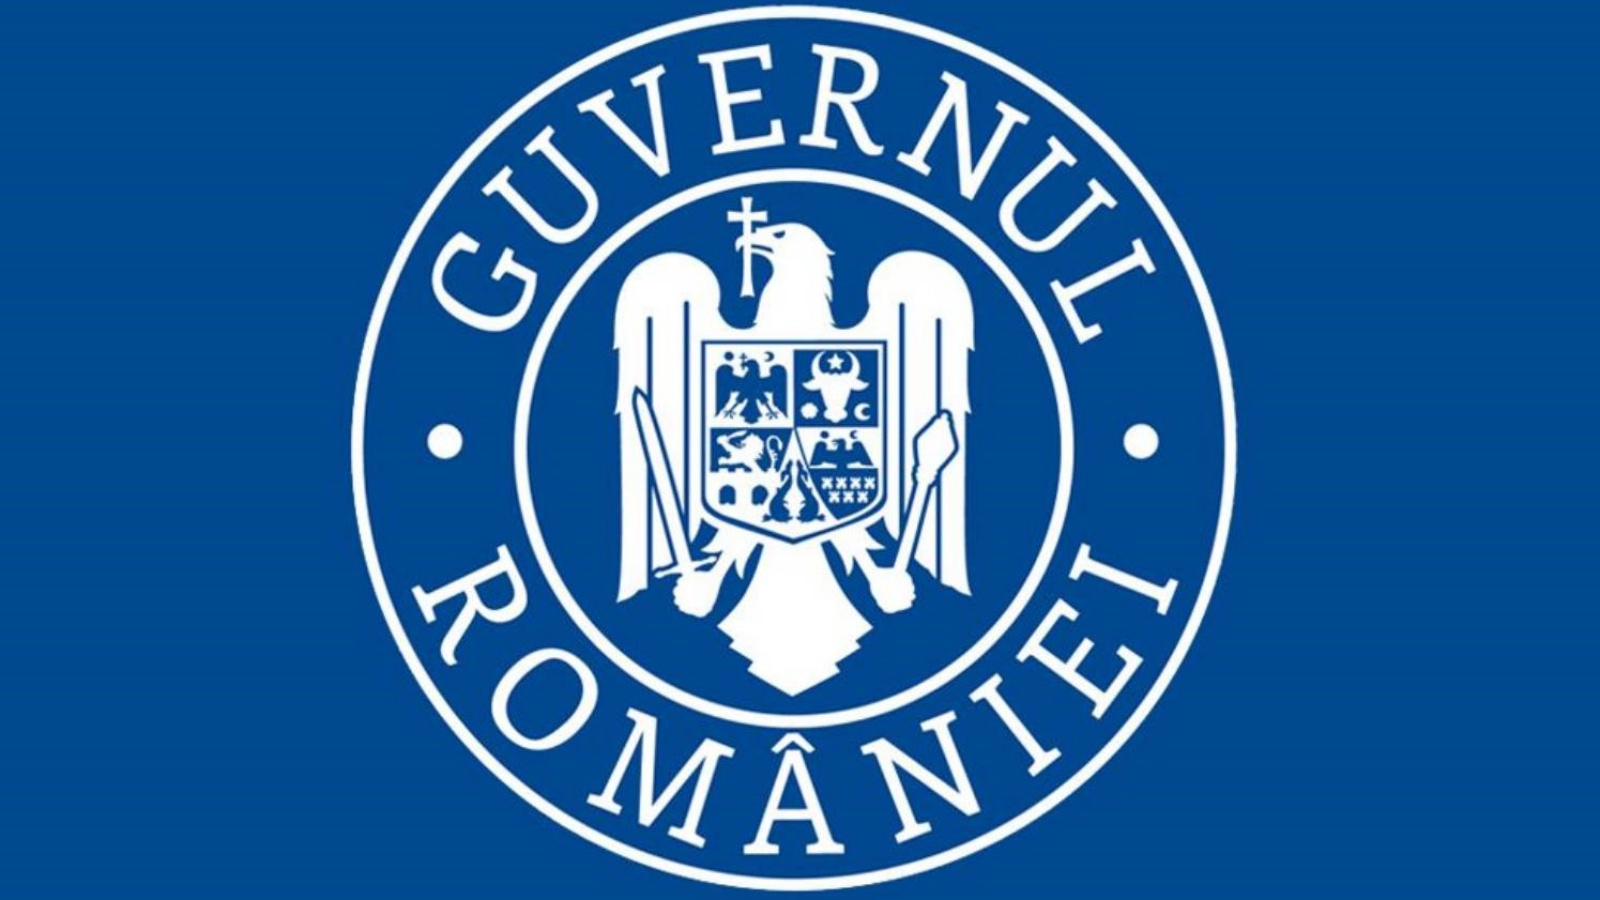 Rumänische Regierung stellt Covid-Grenzübertrittsbescheinigung in Frage